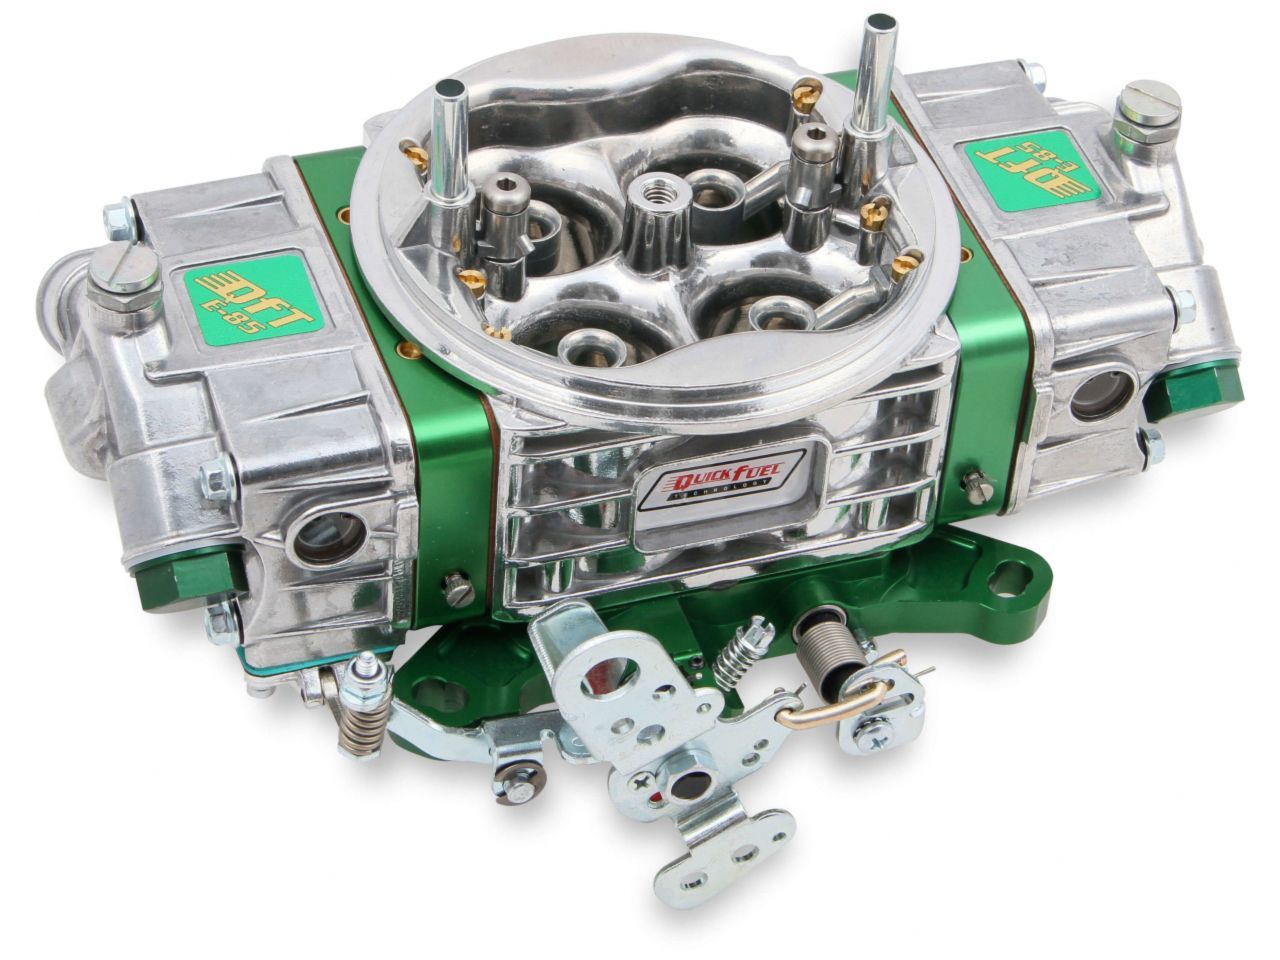 Quick Fuel Carburetor Kits Q-750-E85 Item Image